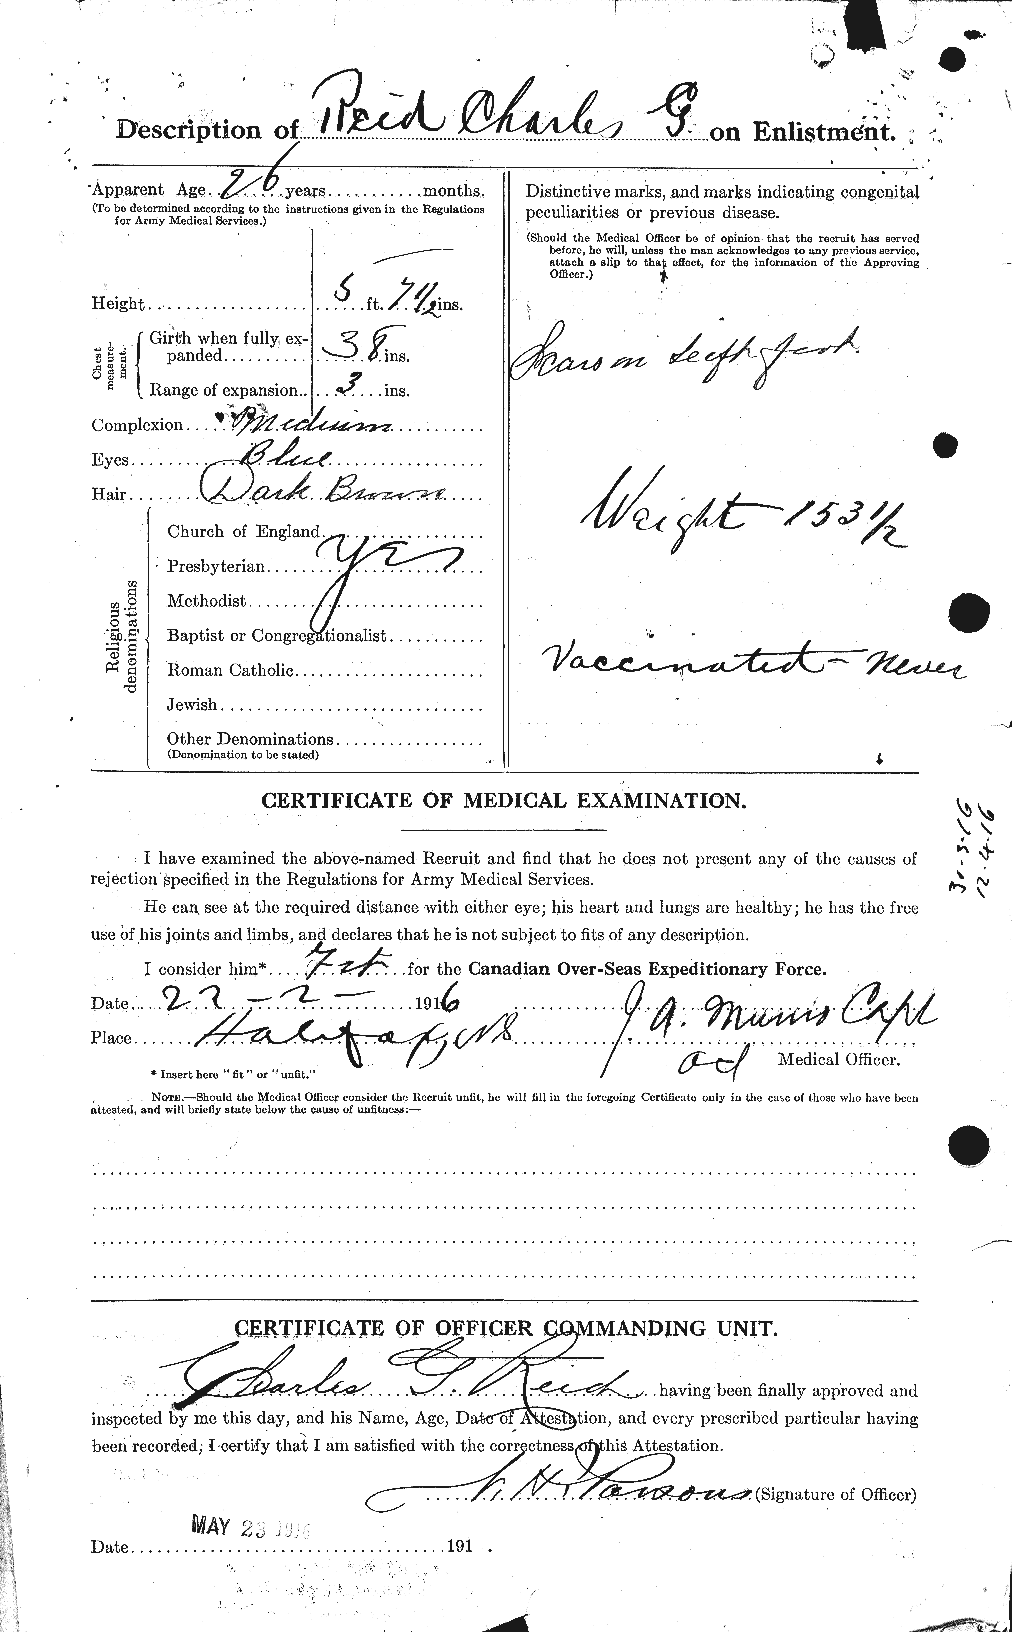 Dossiers du Personnel de la Première Guerre mondiale - CEC 597889b